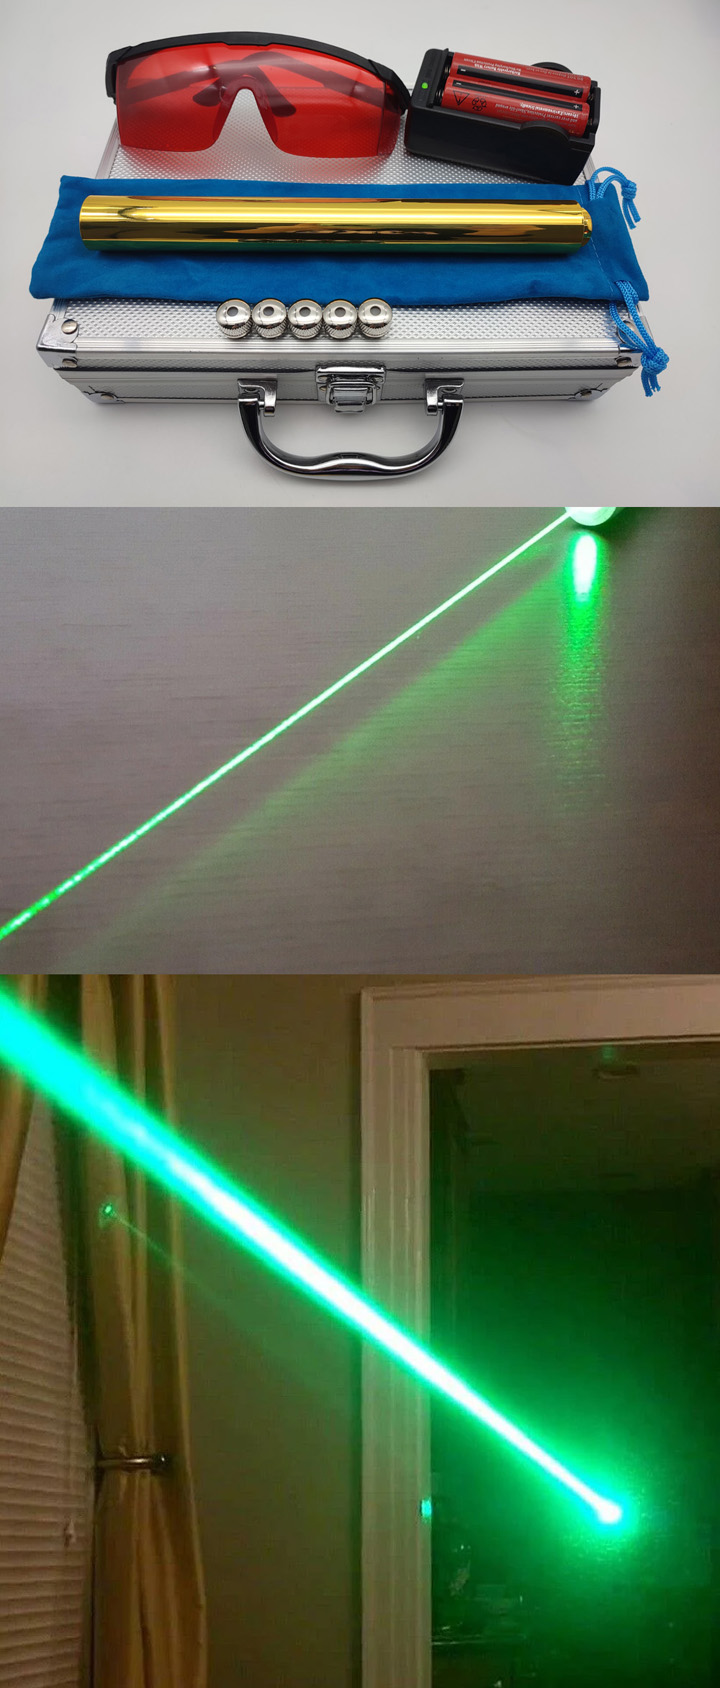 Pointeur laser vert 1W